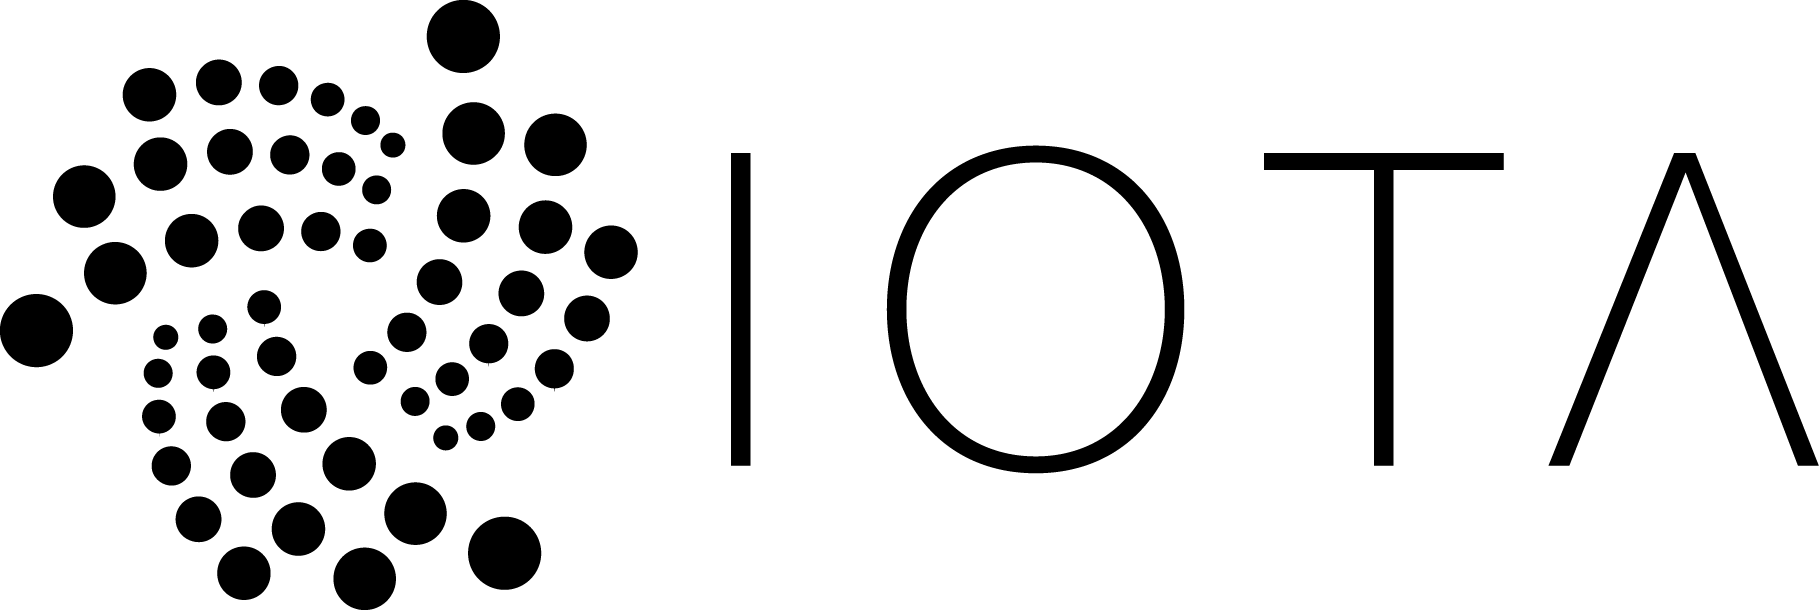 Iota Logo - Iota Coin (1819x610)